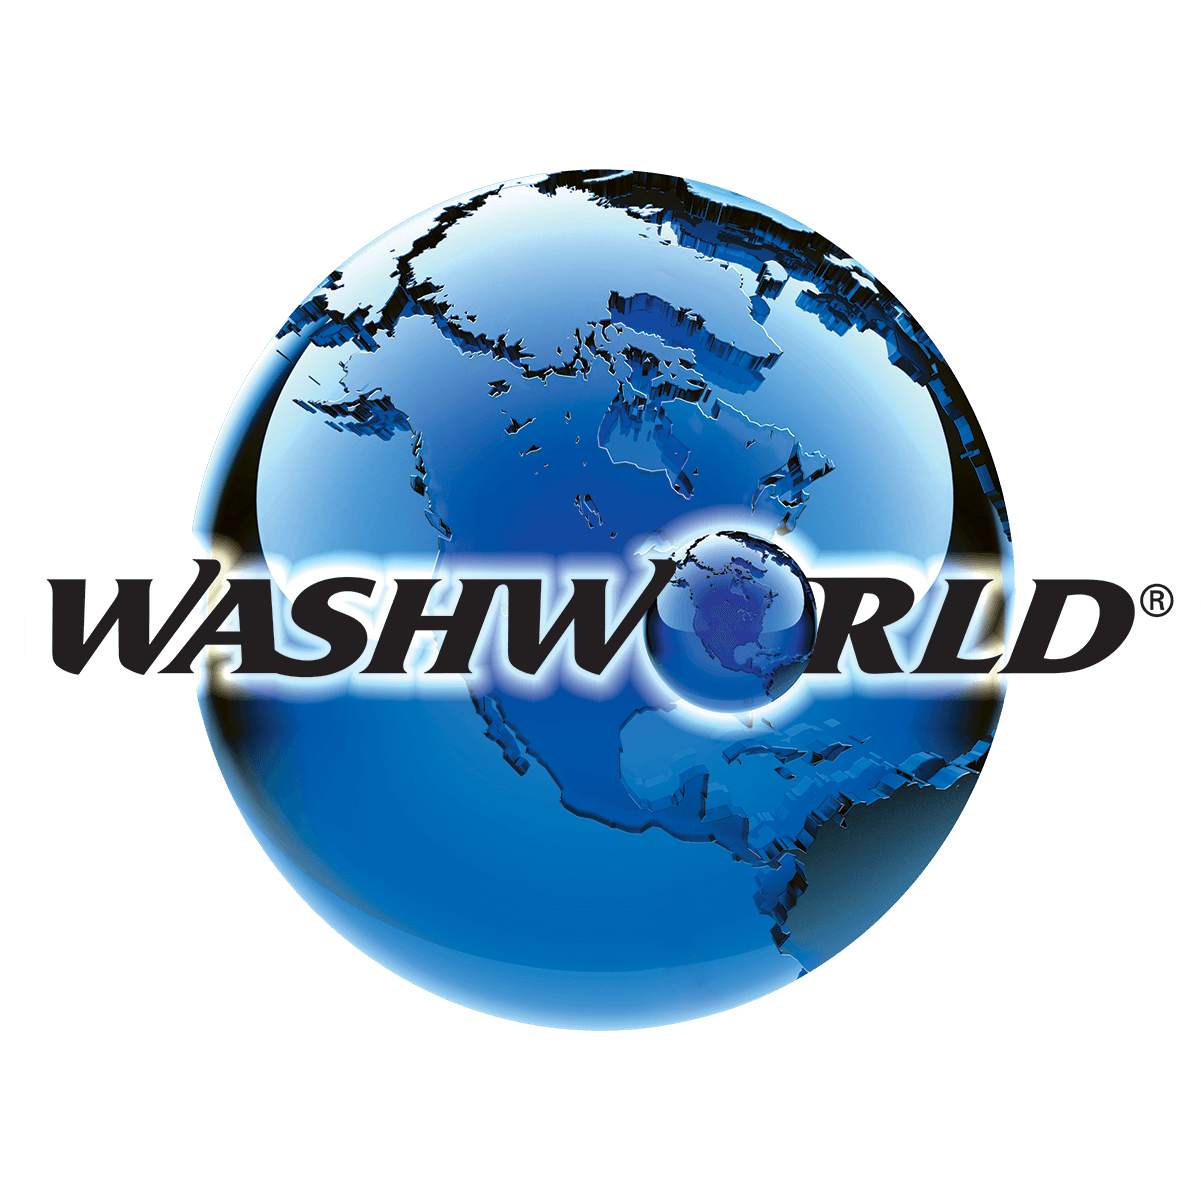 Washworld Car Wash Videos